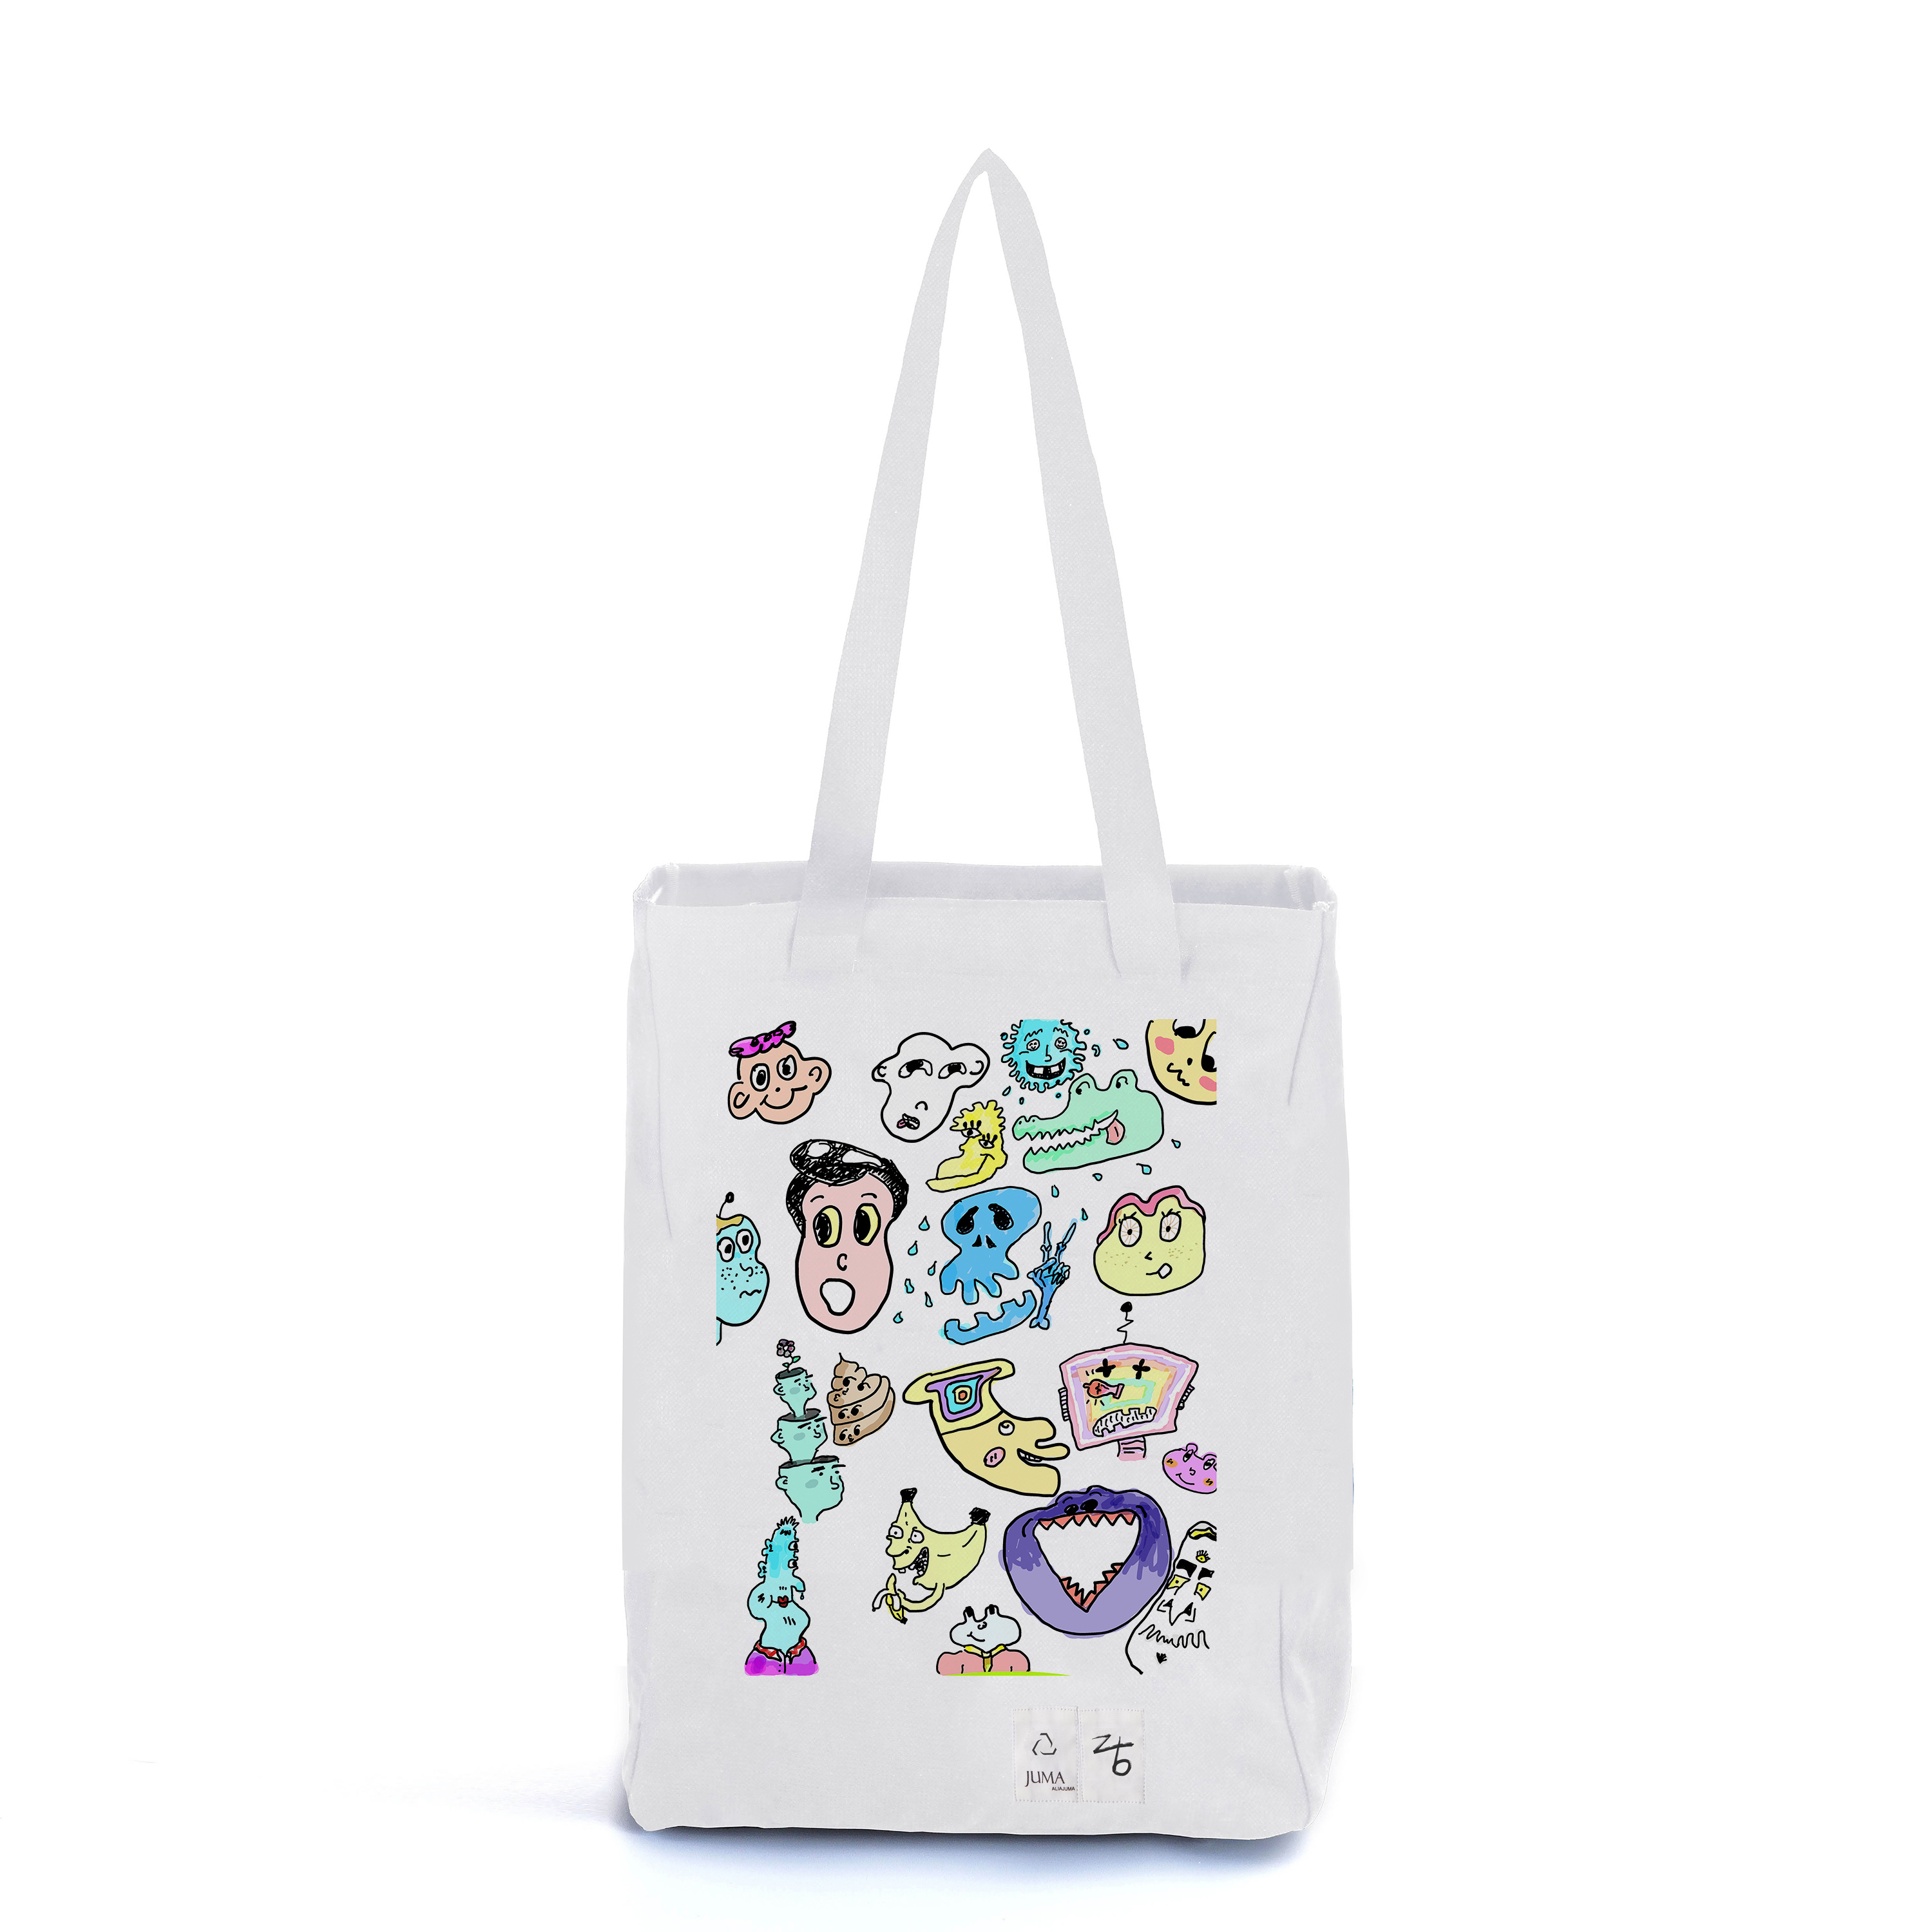 Z+B Aqua厨房印花中号托特包 - 可循环面料 - 白色｜Z+B Aqua Kitchen Print Tote Bag Mid Size - Up cycled Fabric - White